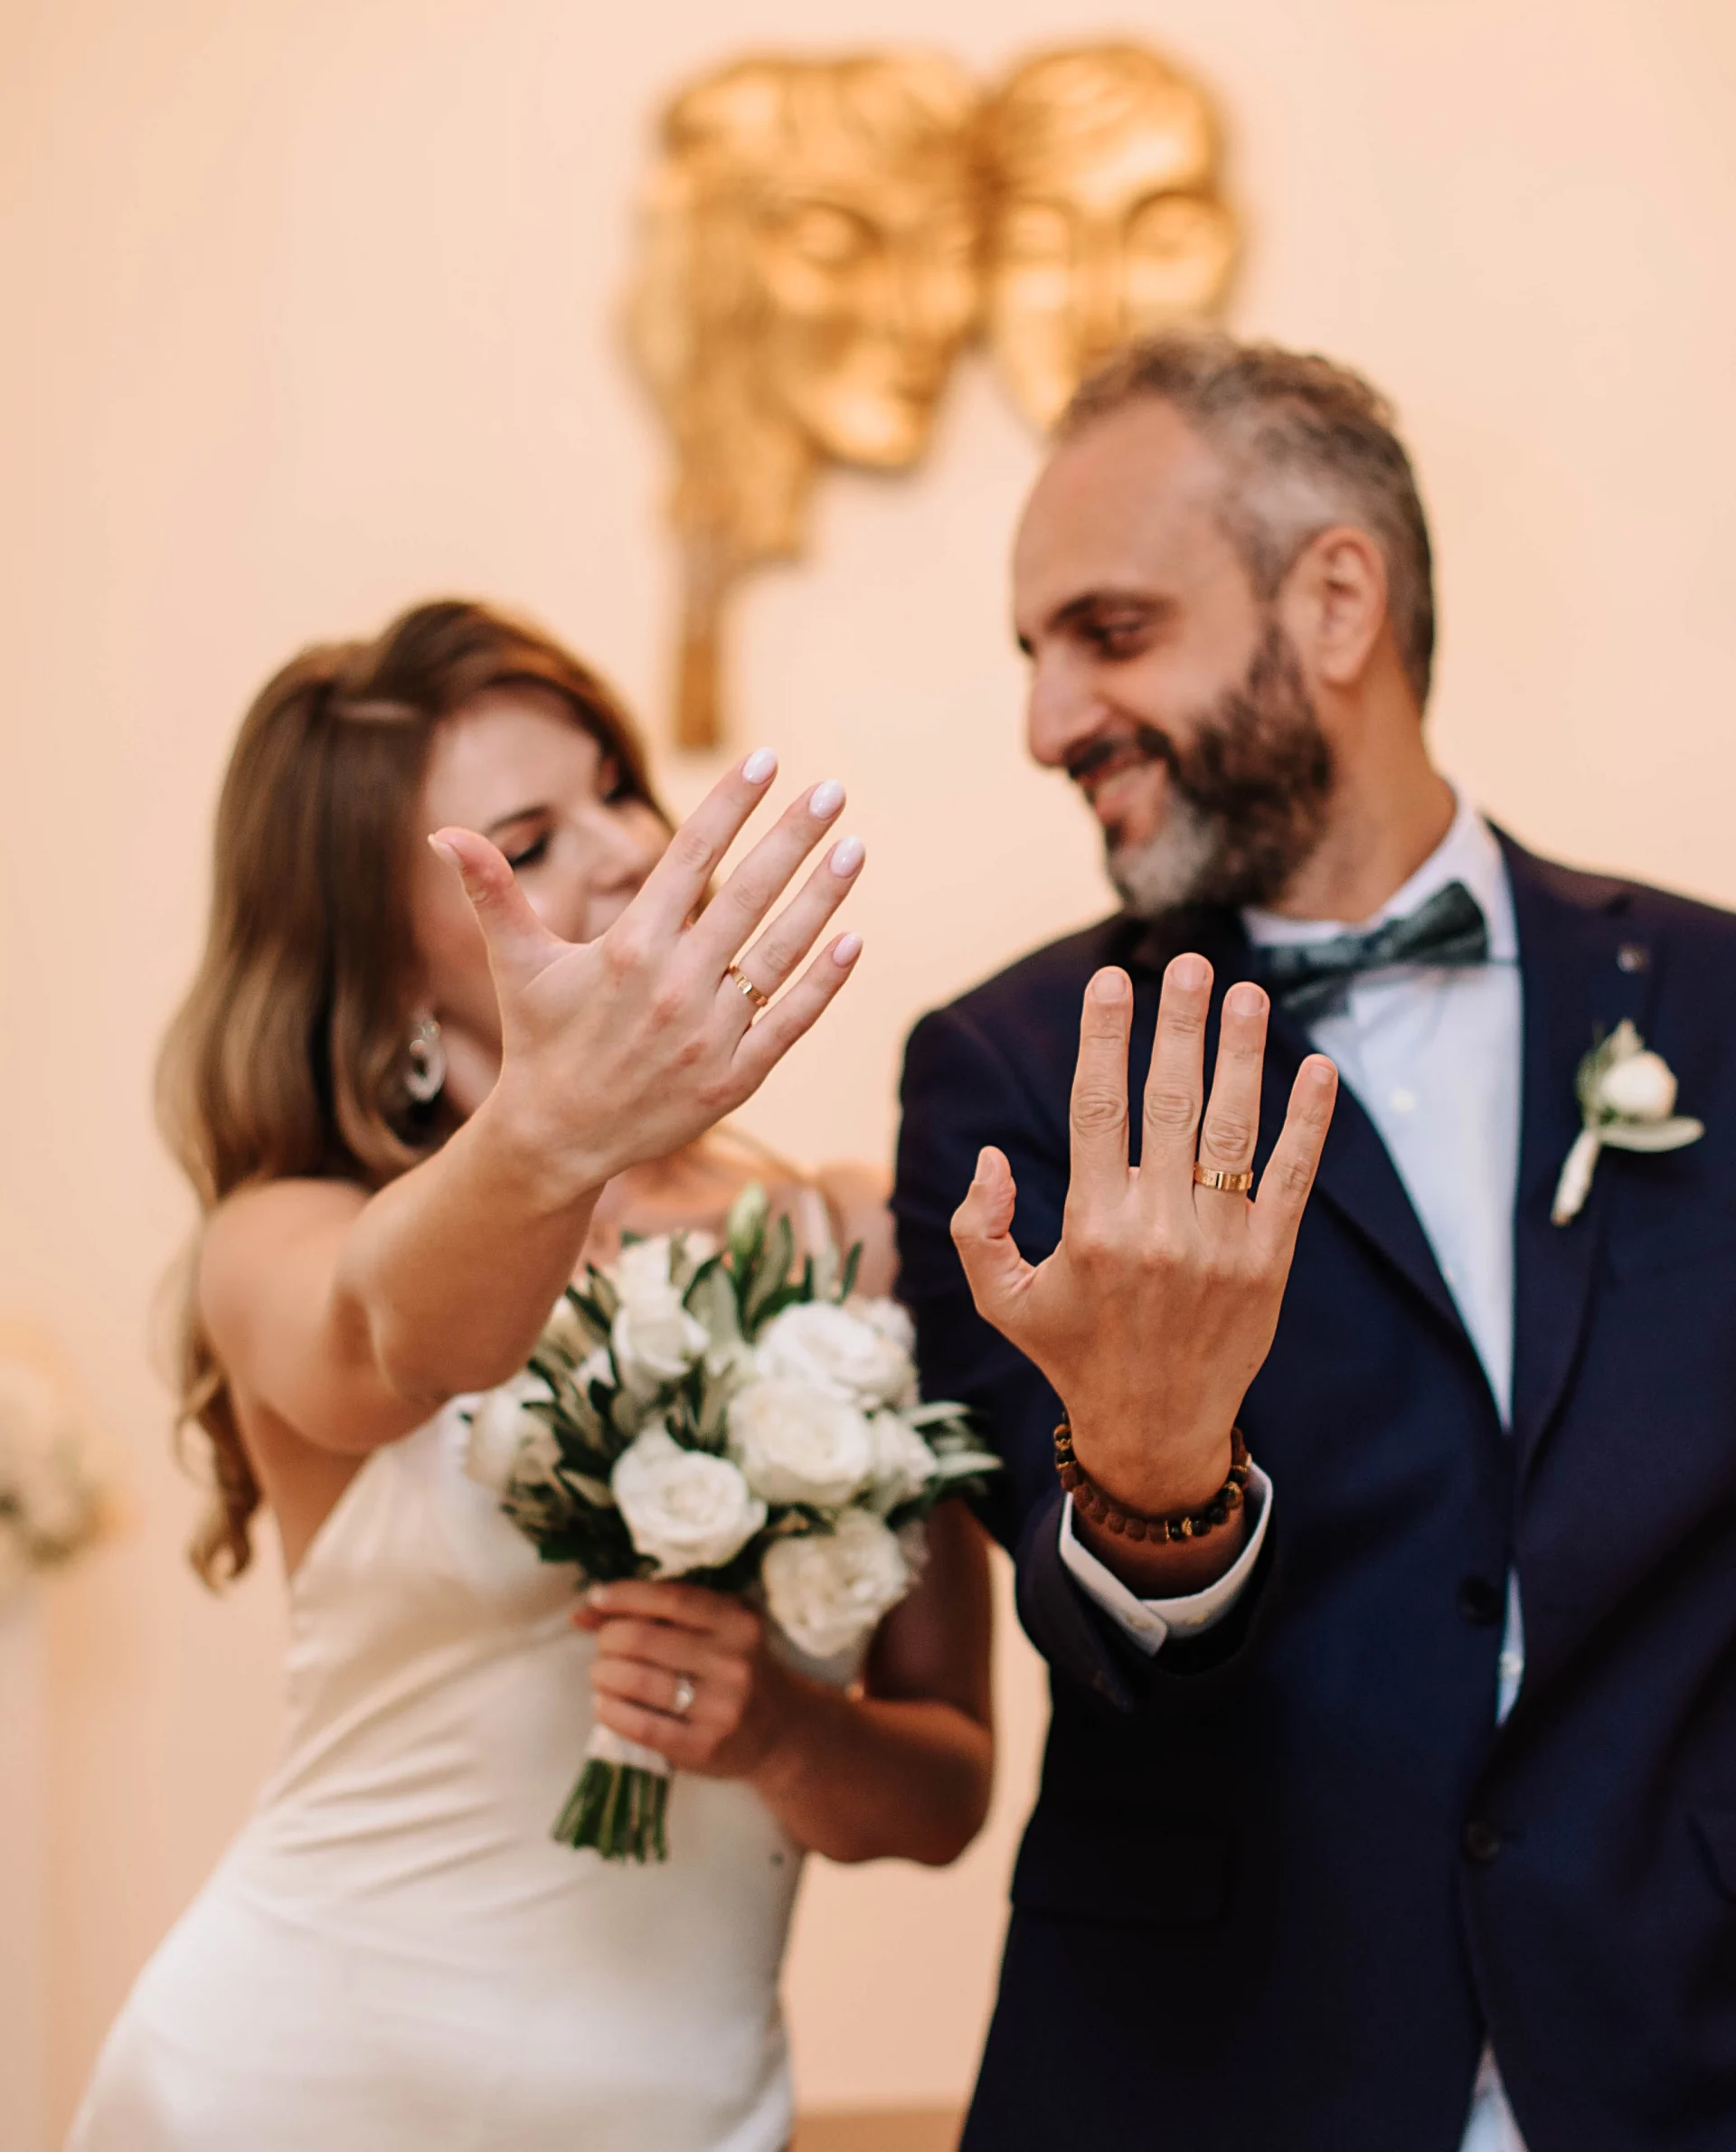 Свадьба в Тбилиси для иностранцев